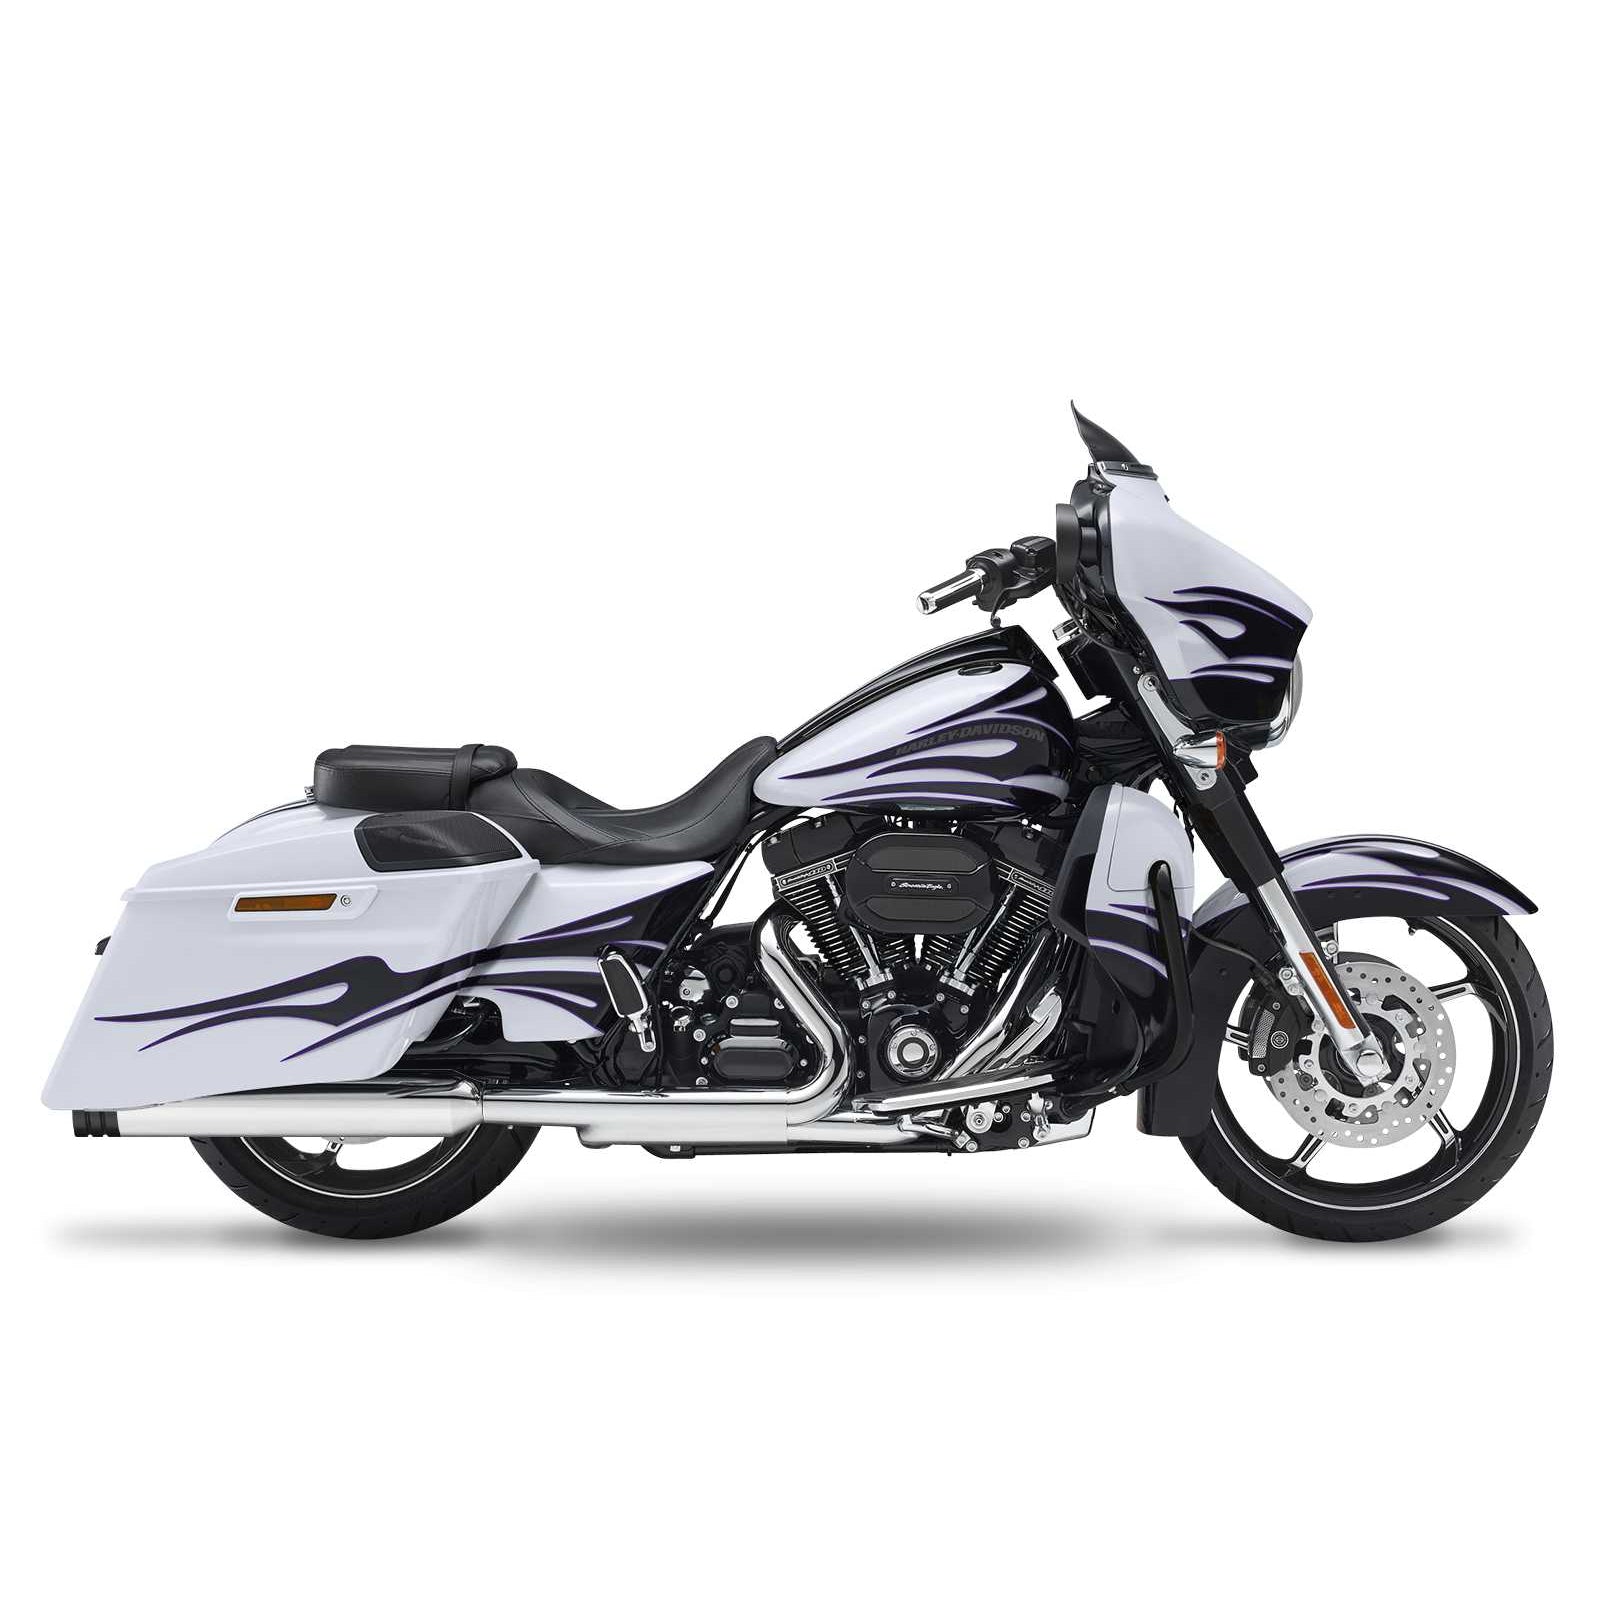 Кesstech 2018 Harley-Davidson Road Glide Special Pro-Line Slipons adjustable